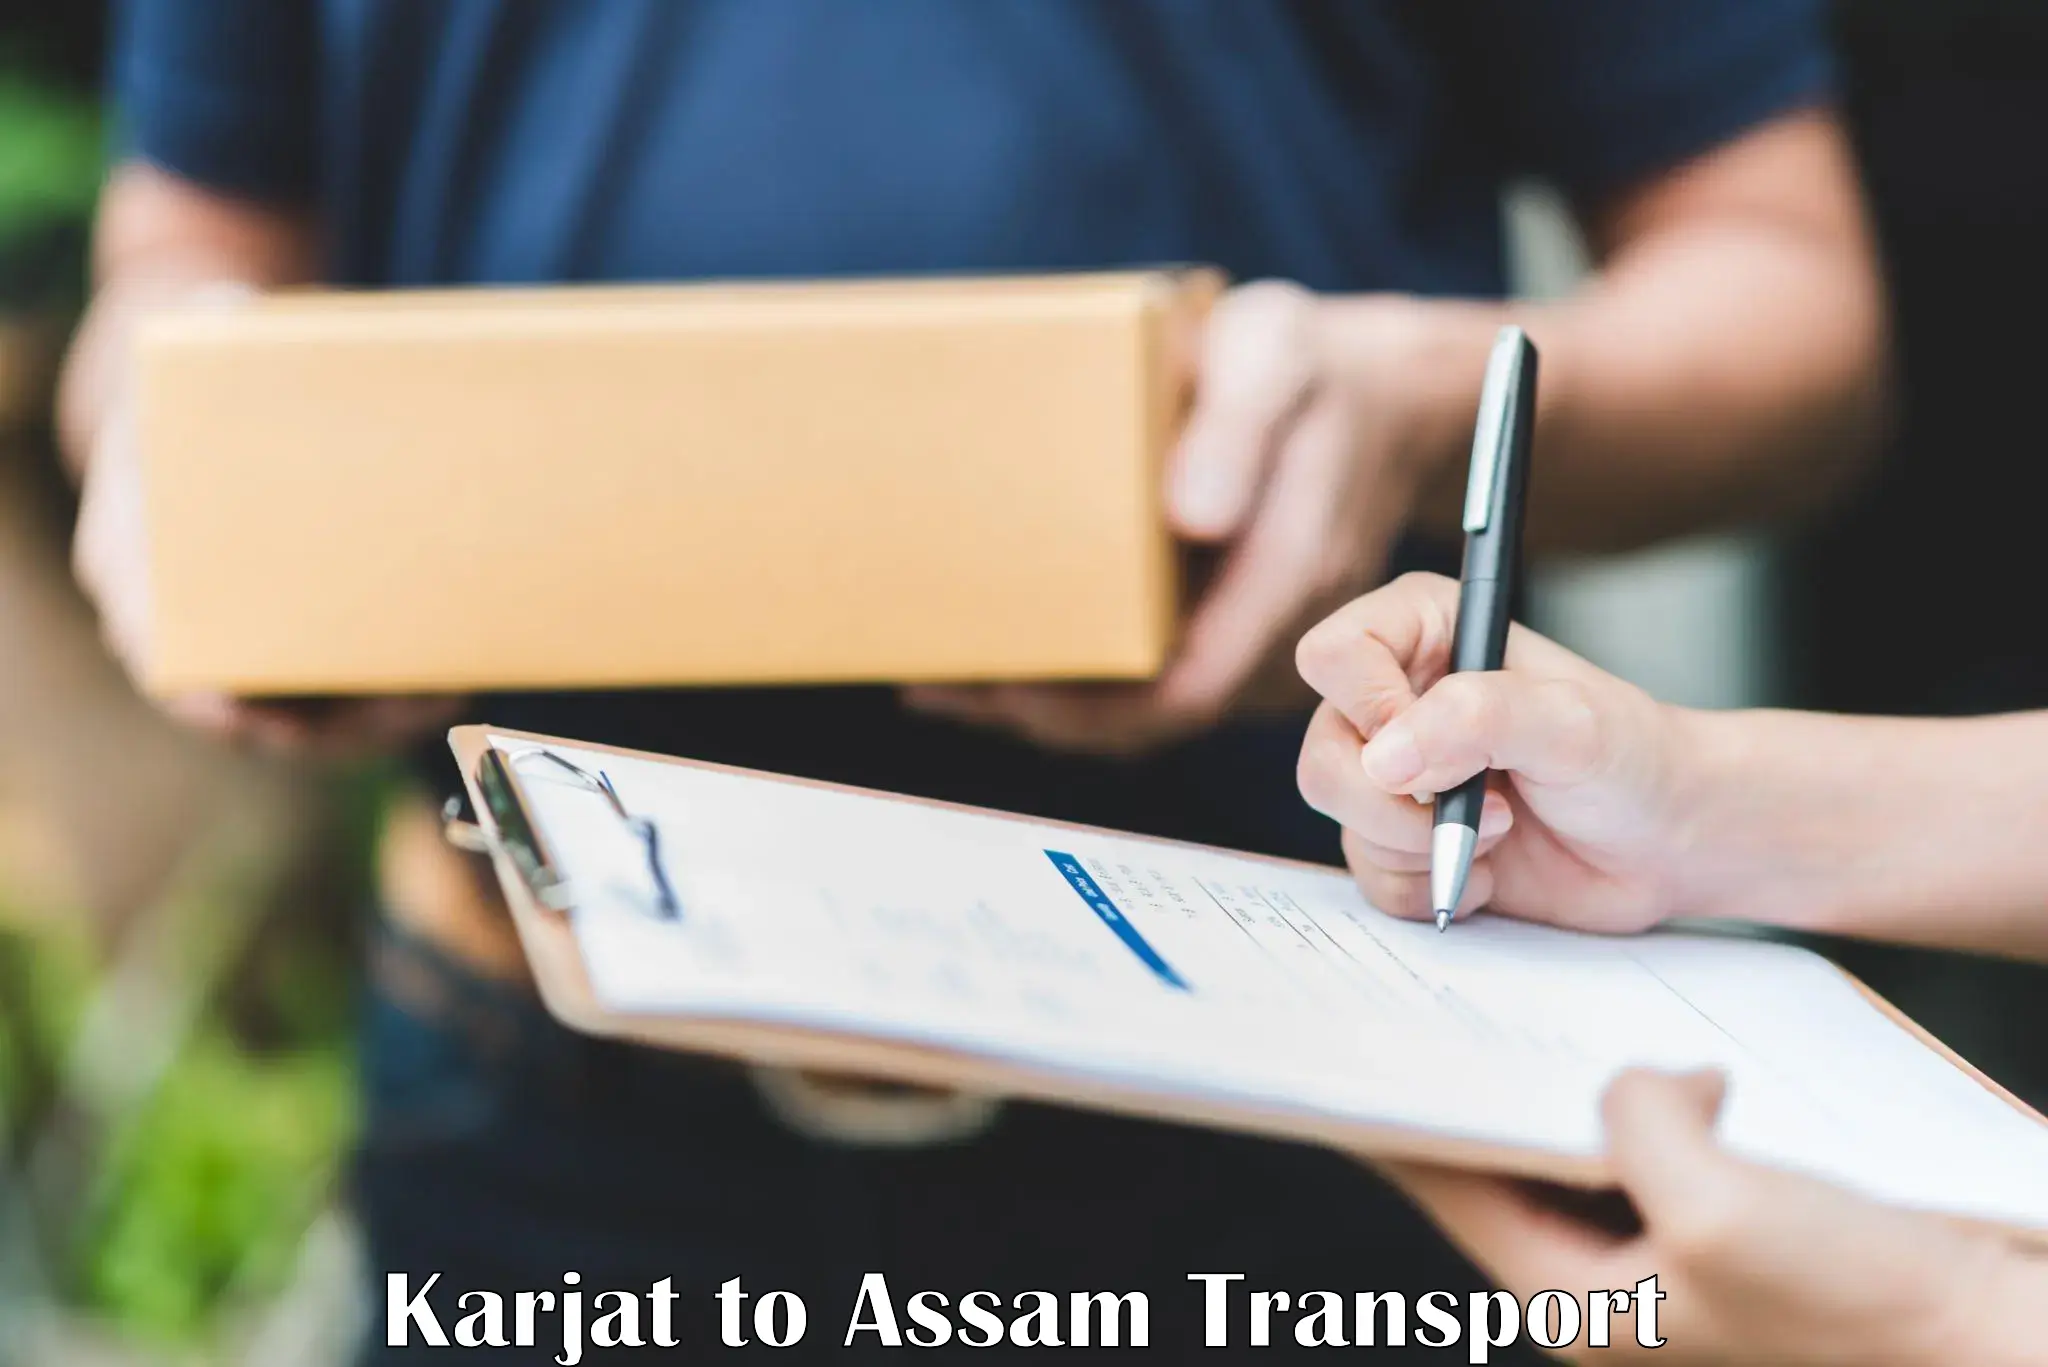 Lorry transport service Karjat to Jorabat